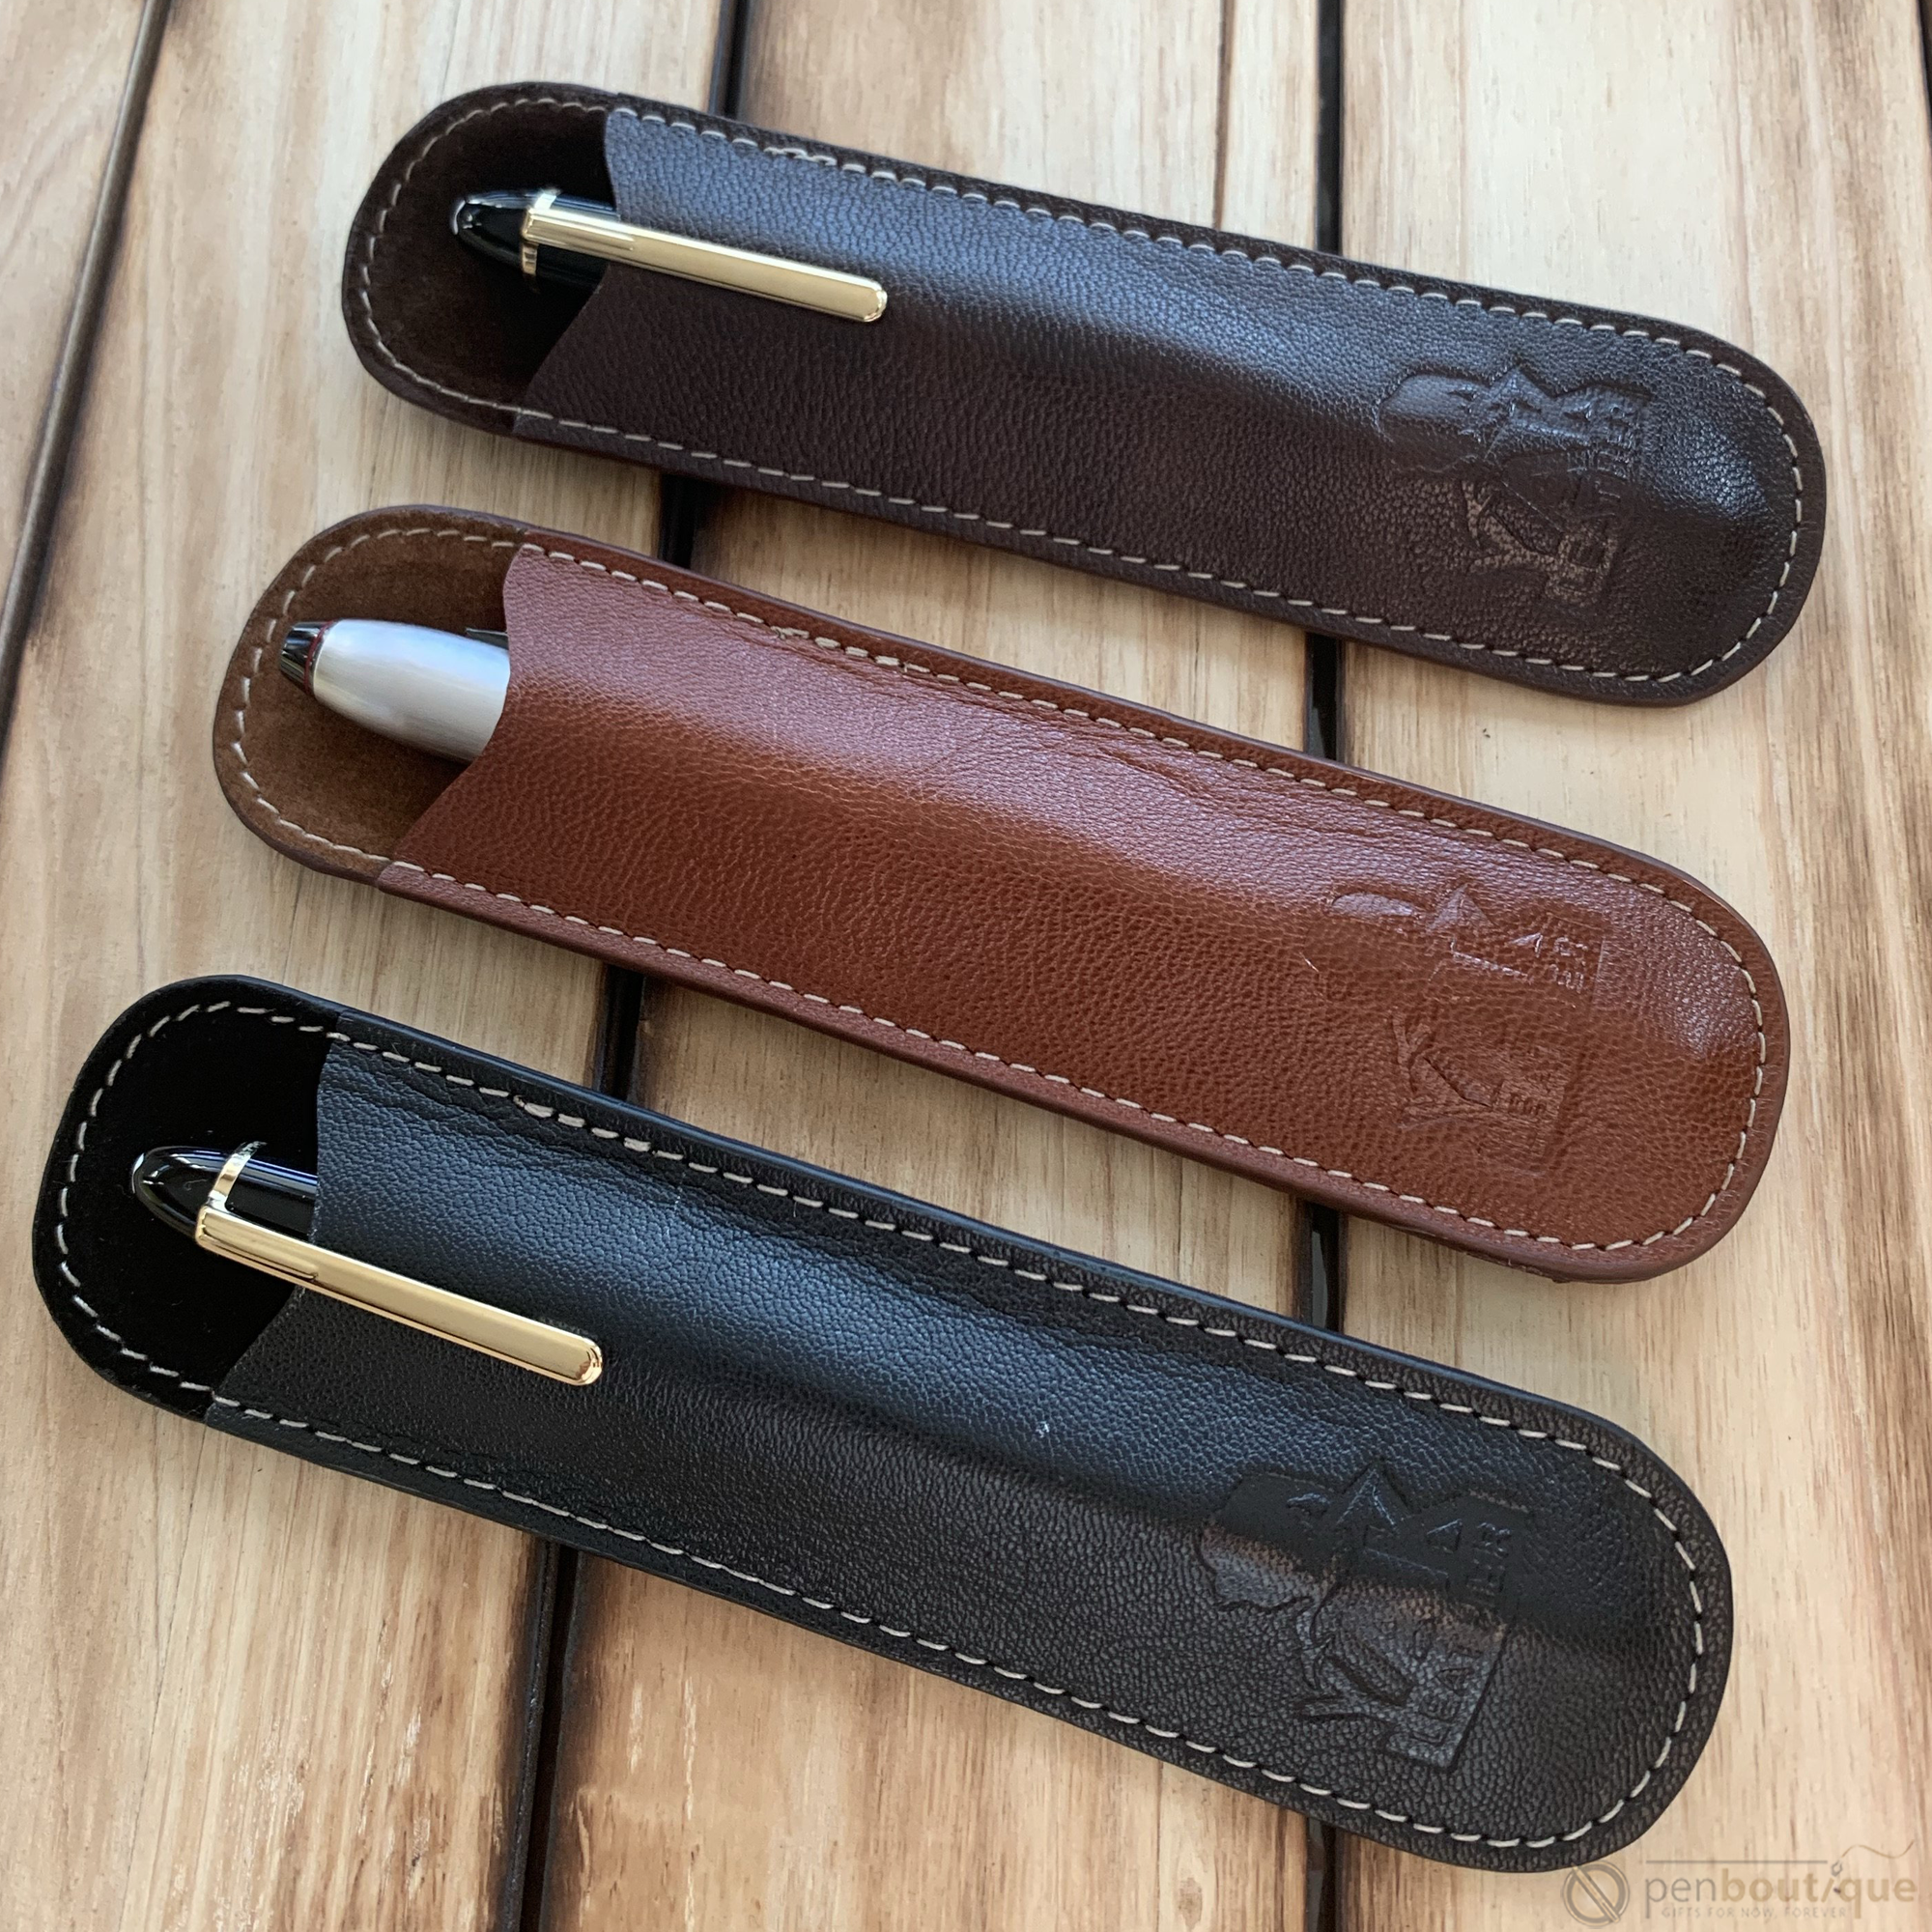 Leather Pen Case - Antique Tan